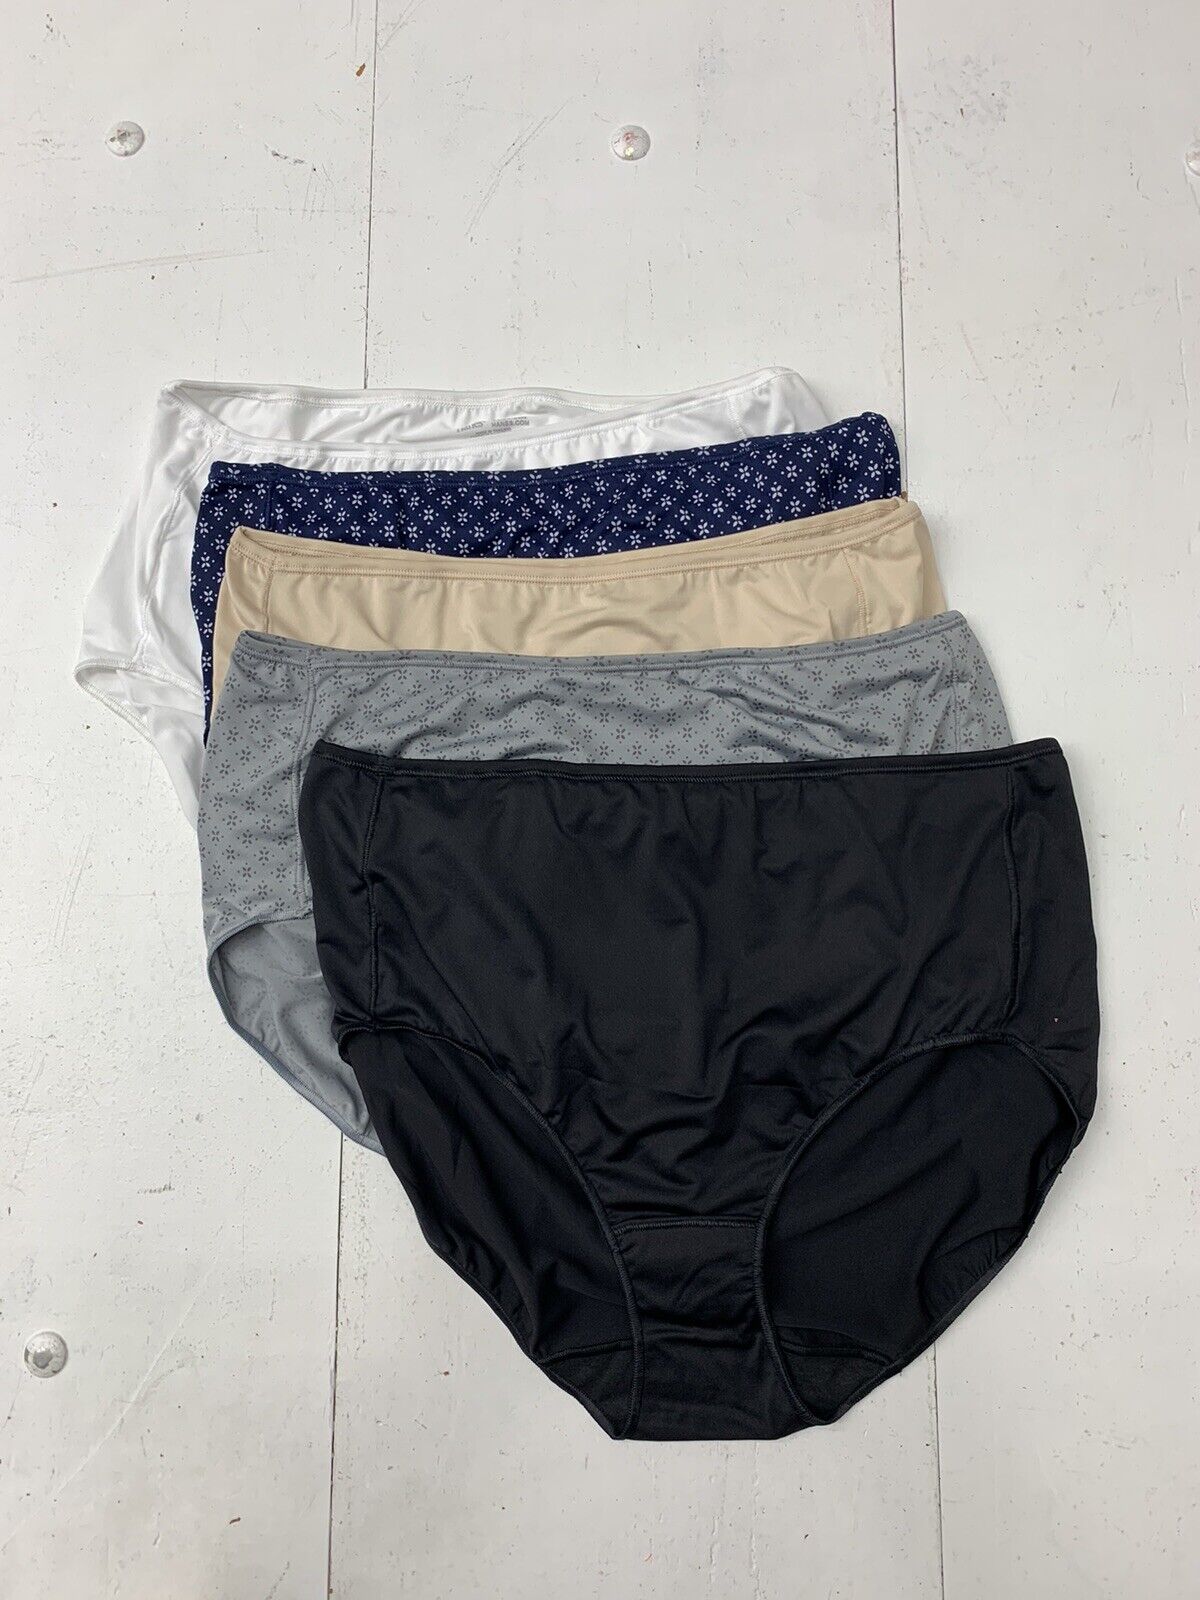 Hanes womens Cotton Brief Underwear, 10 Pack - Brief Black, 8